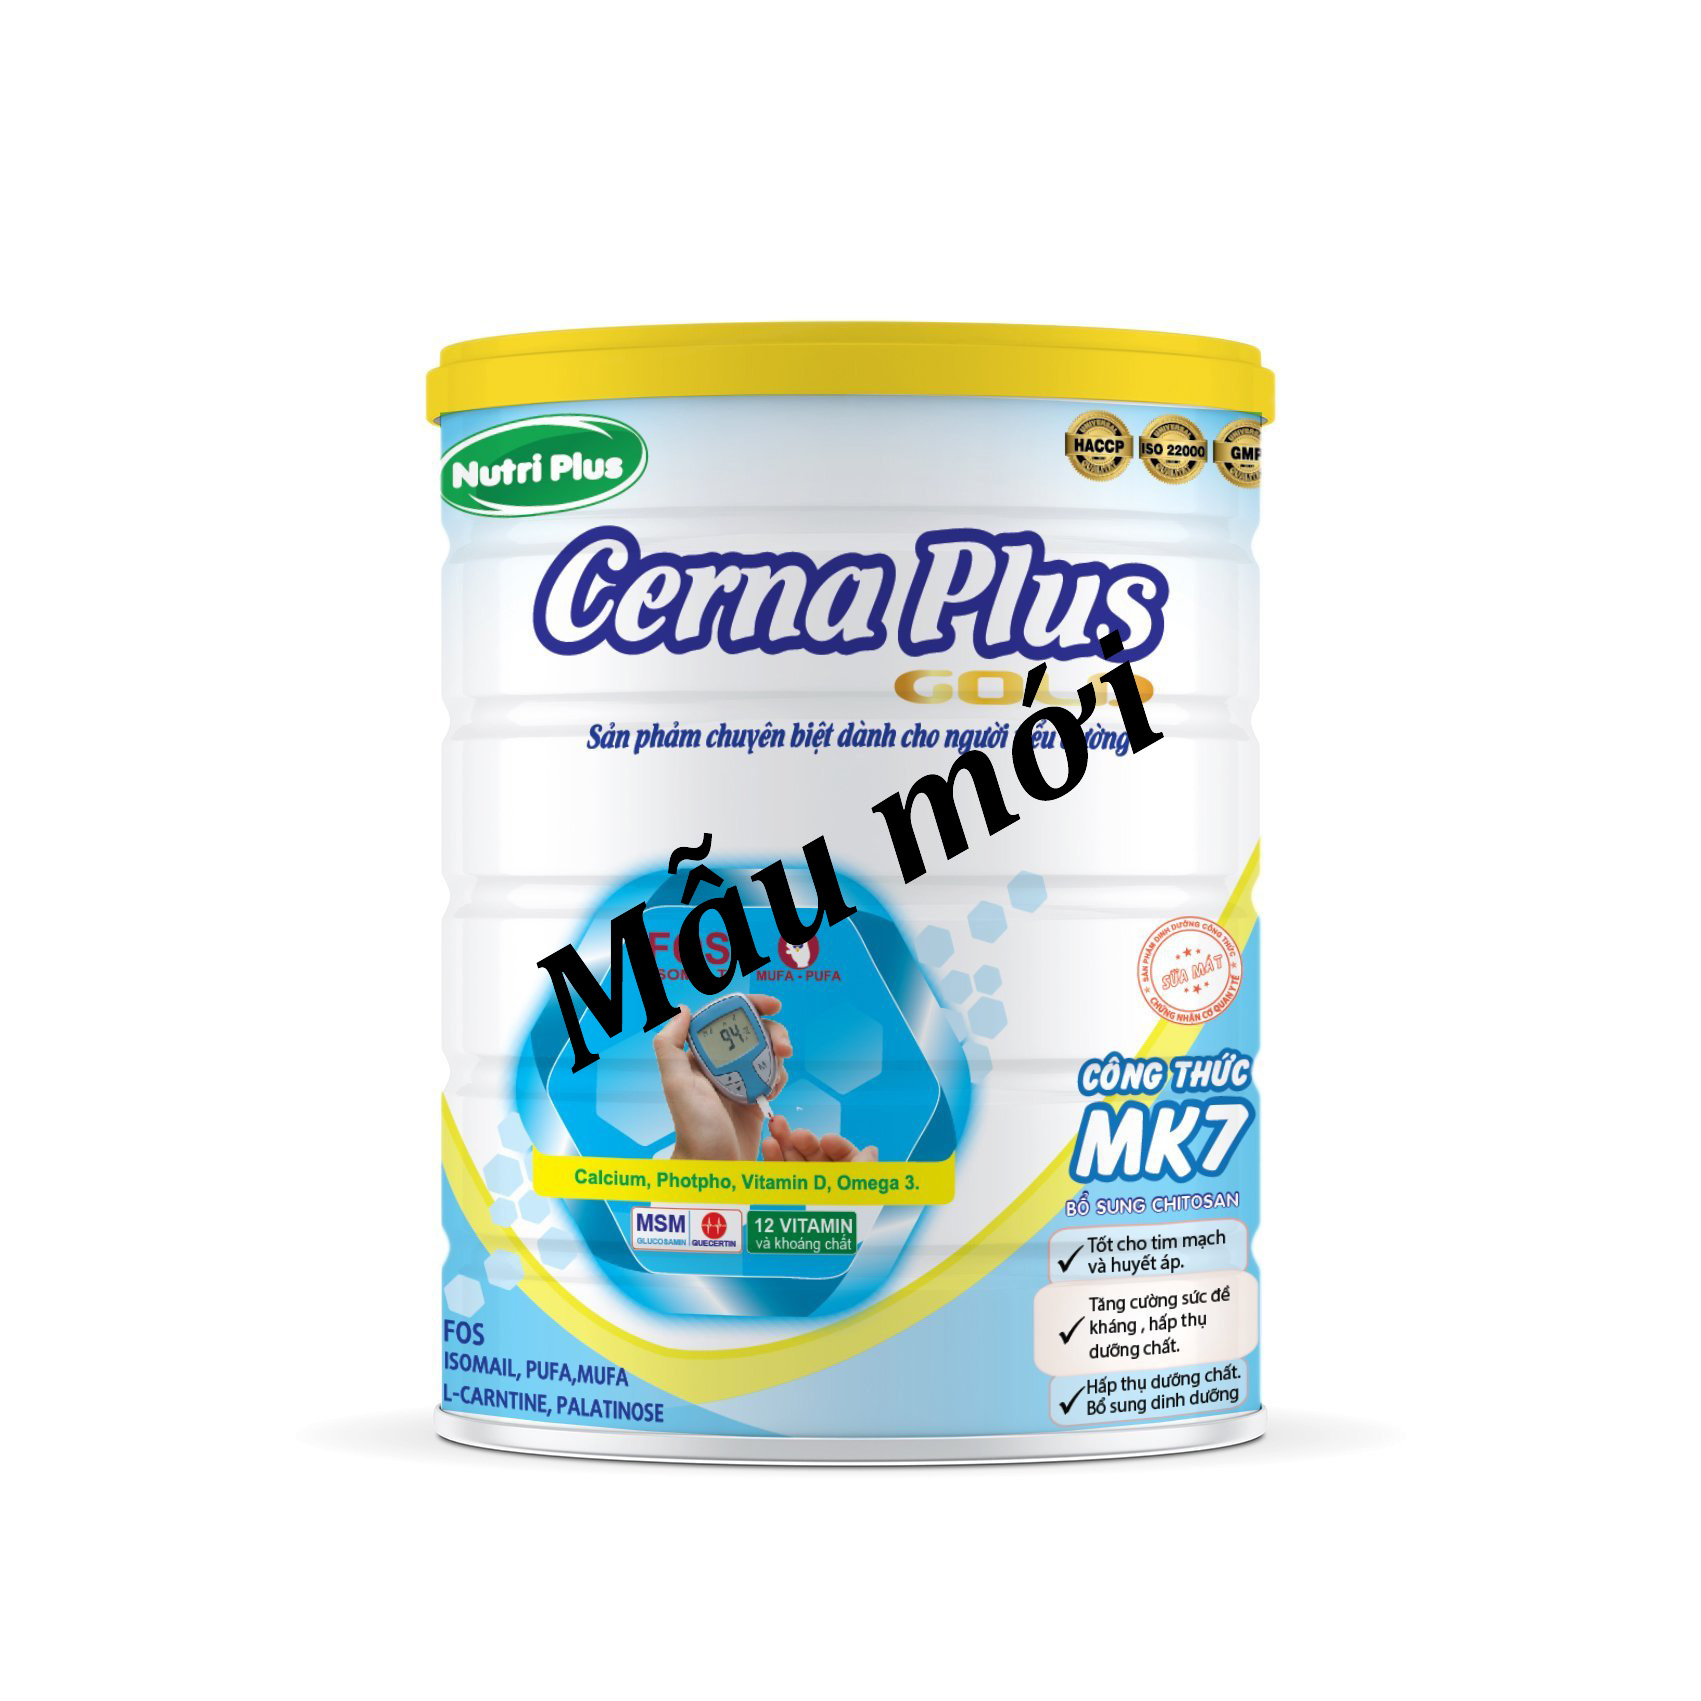 Sữa bột  dinh dưỡng Nutri Plus CERNA PLUS sữa cho người tiền tháo đường và tháo đường (900g) Sunbaby NTCESBTC2019